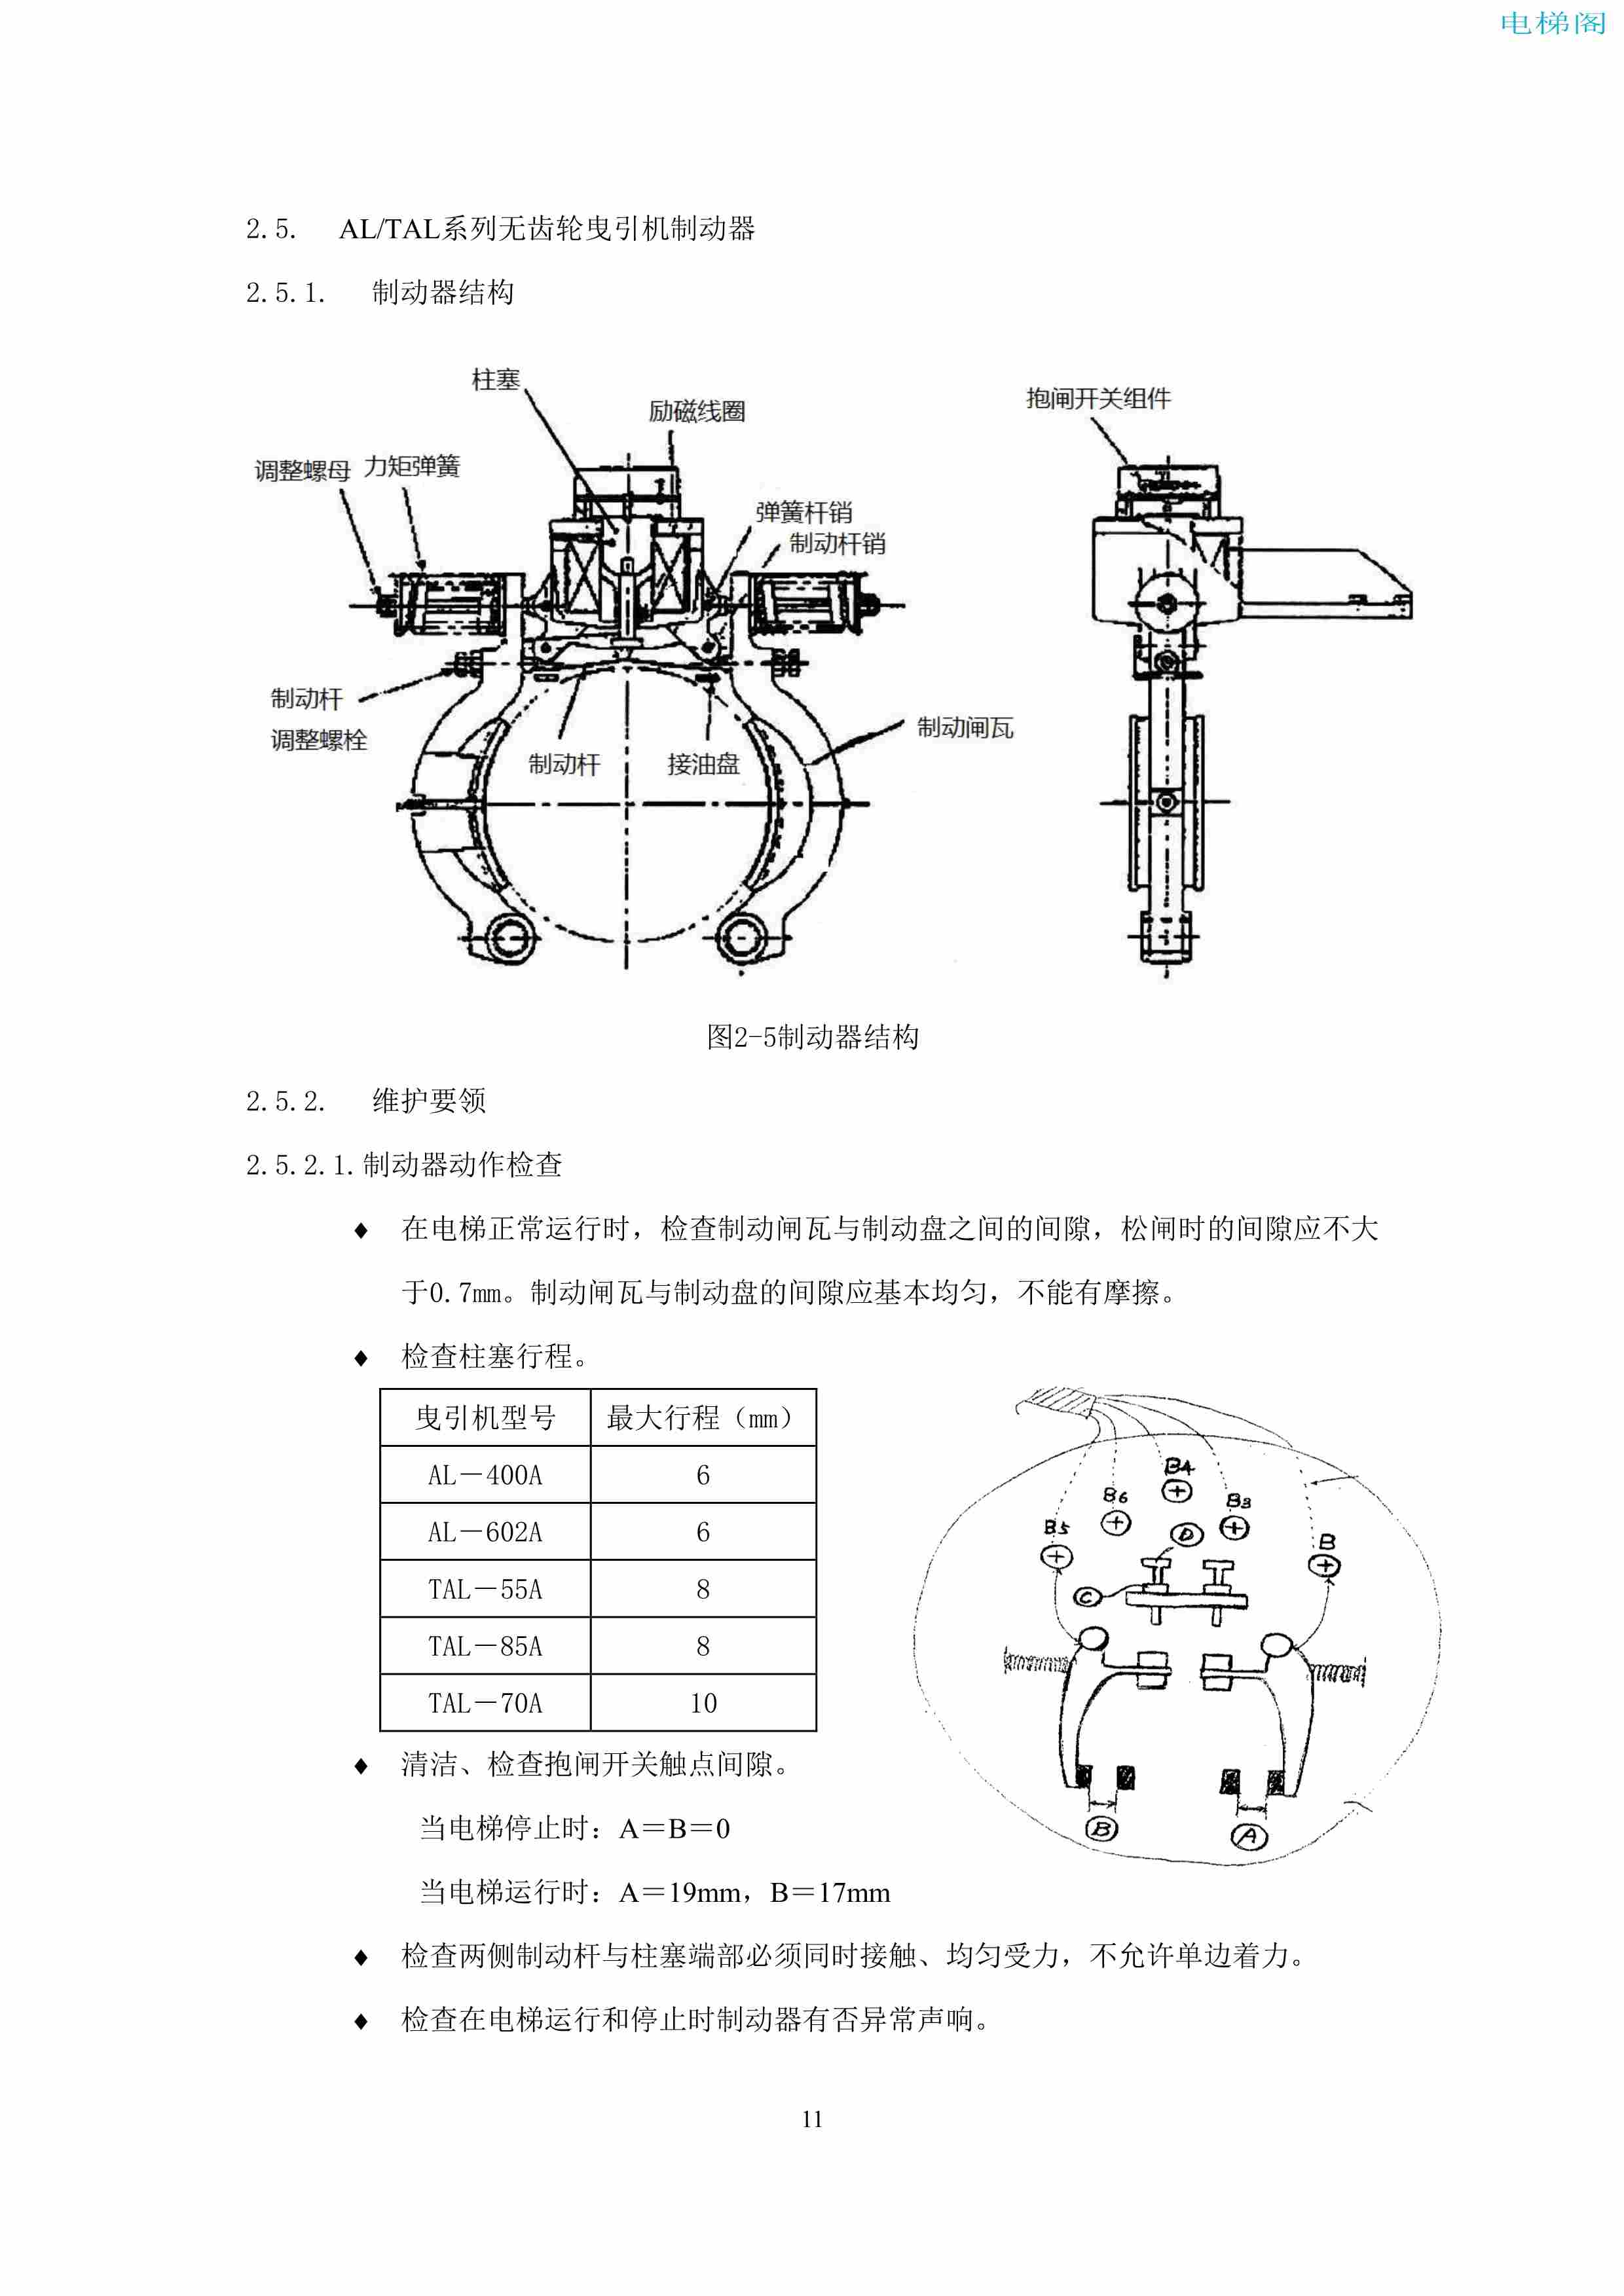 上海三菱电梯有限公司电梯制动器维护作业要领汇编_13.jpg